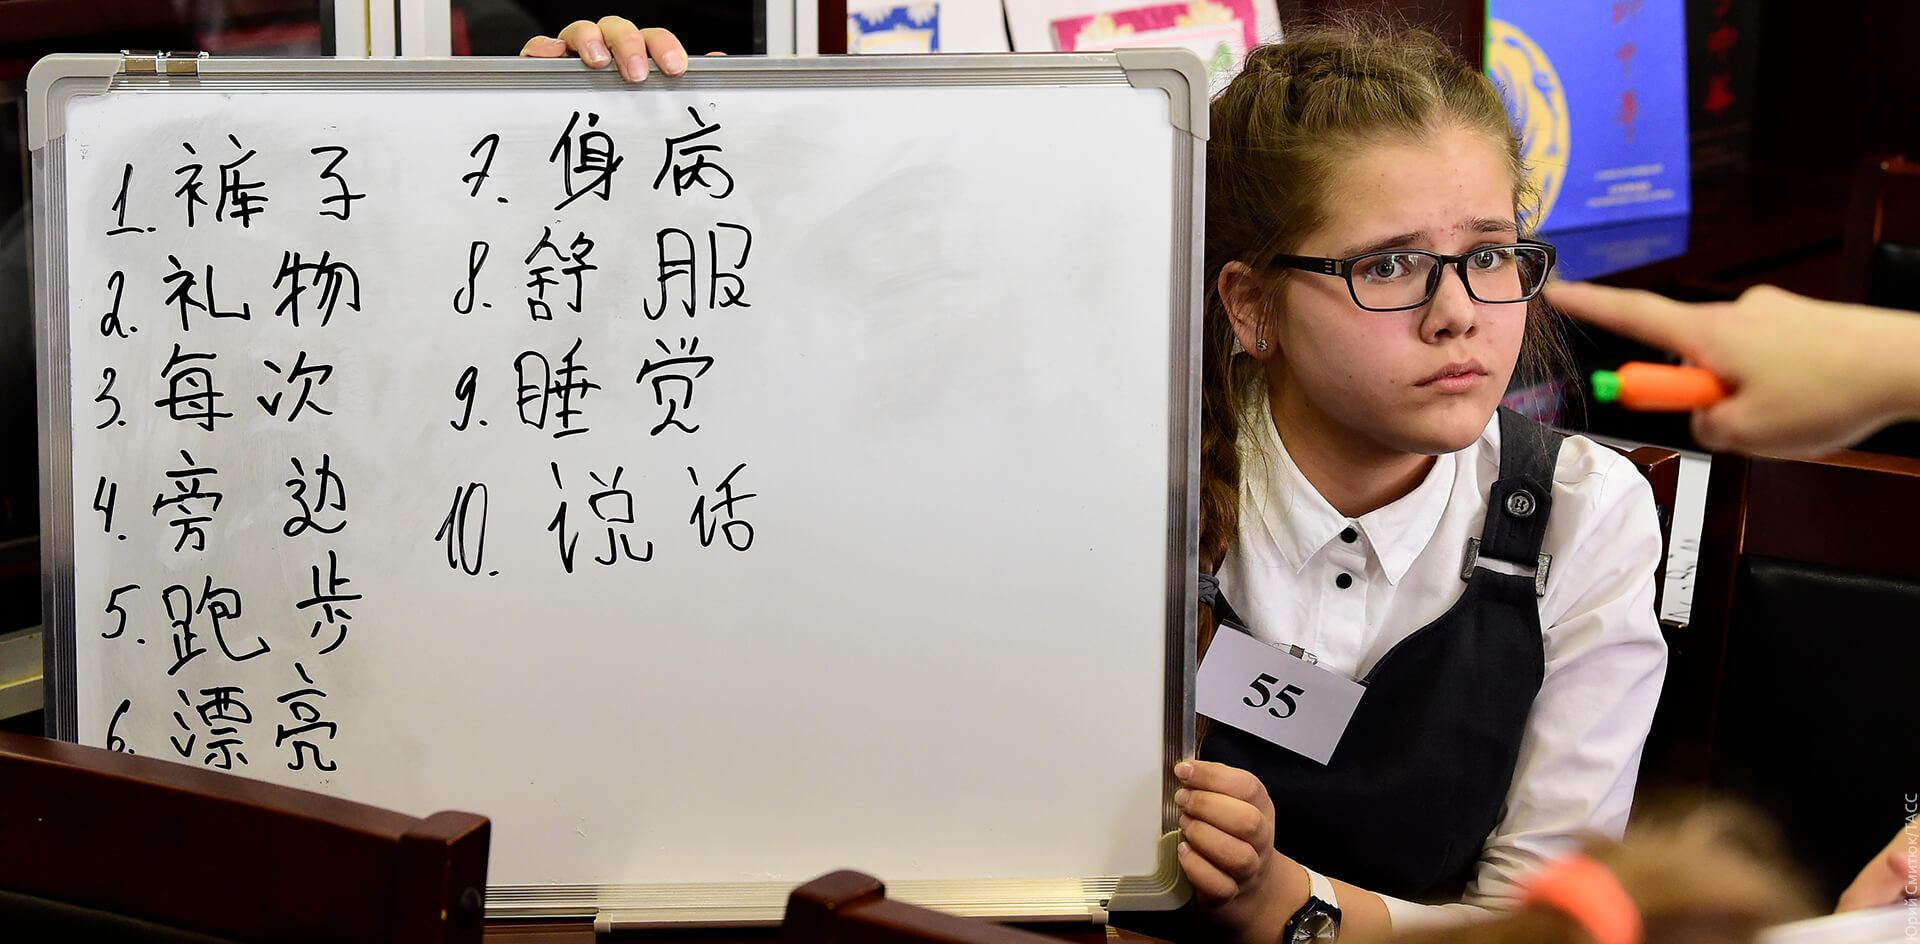 Дальневосточных школьников заставят учить иероглифы